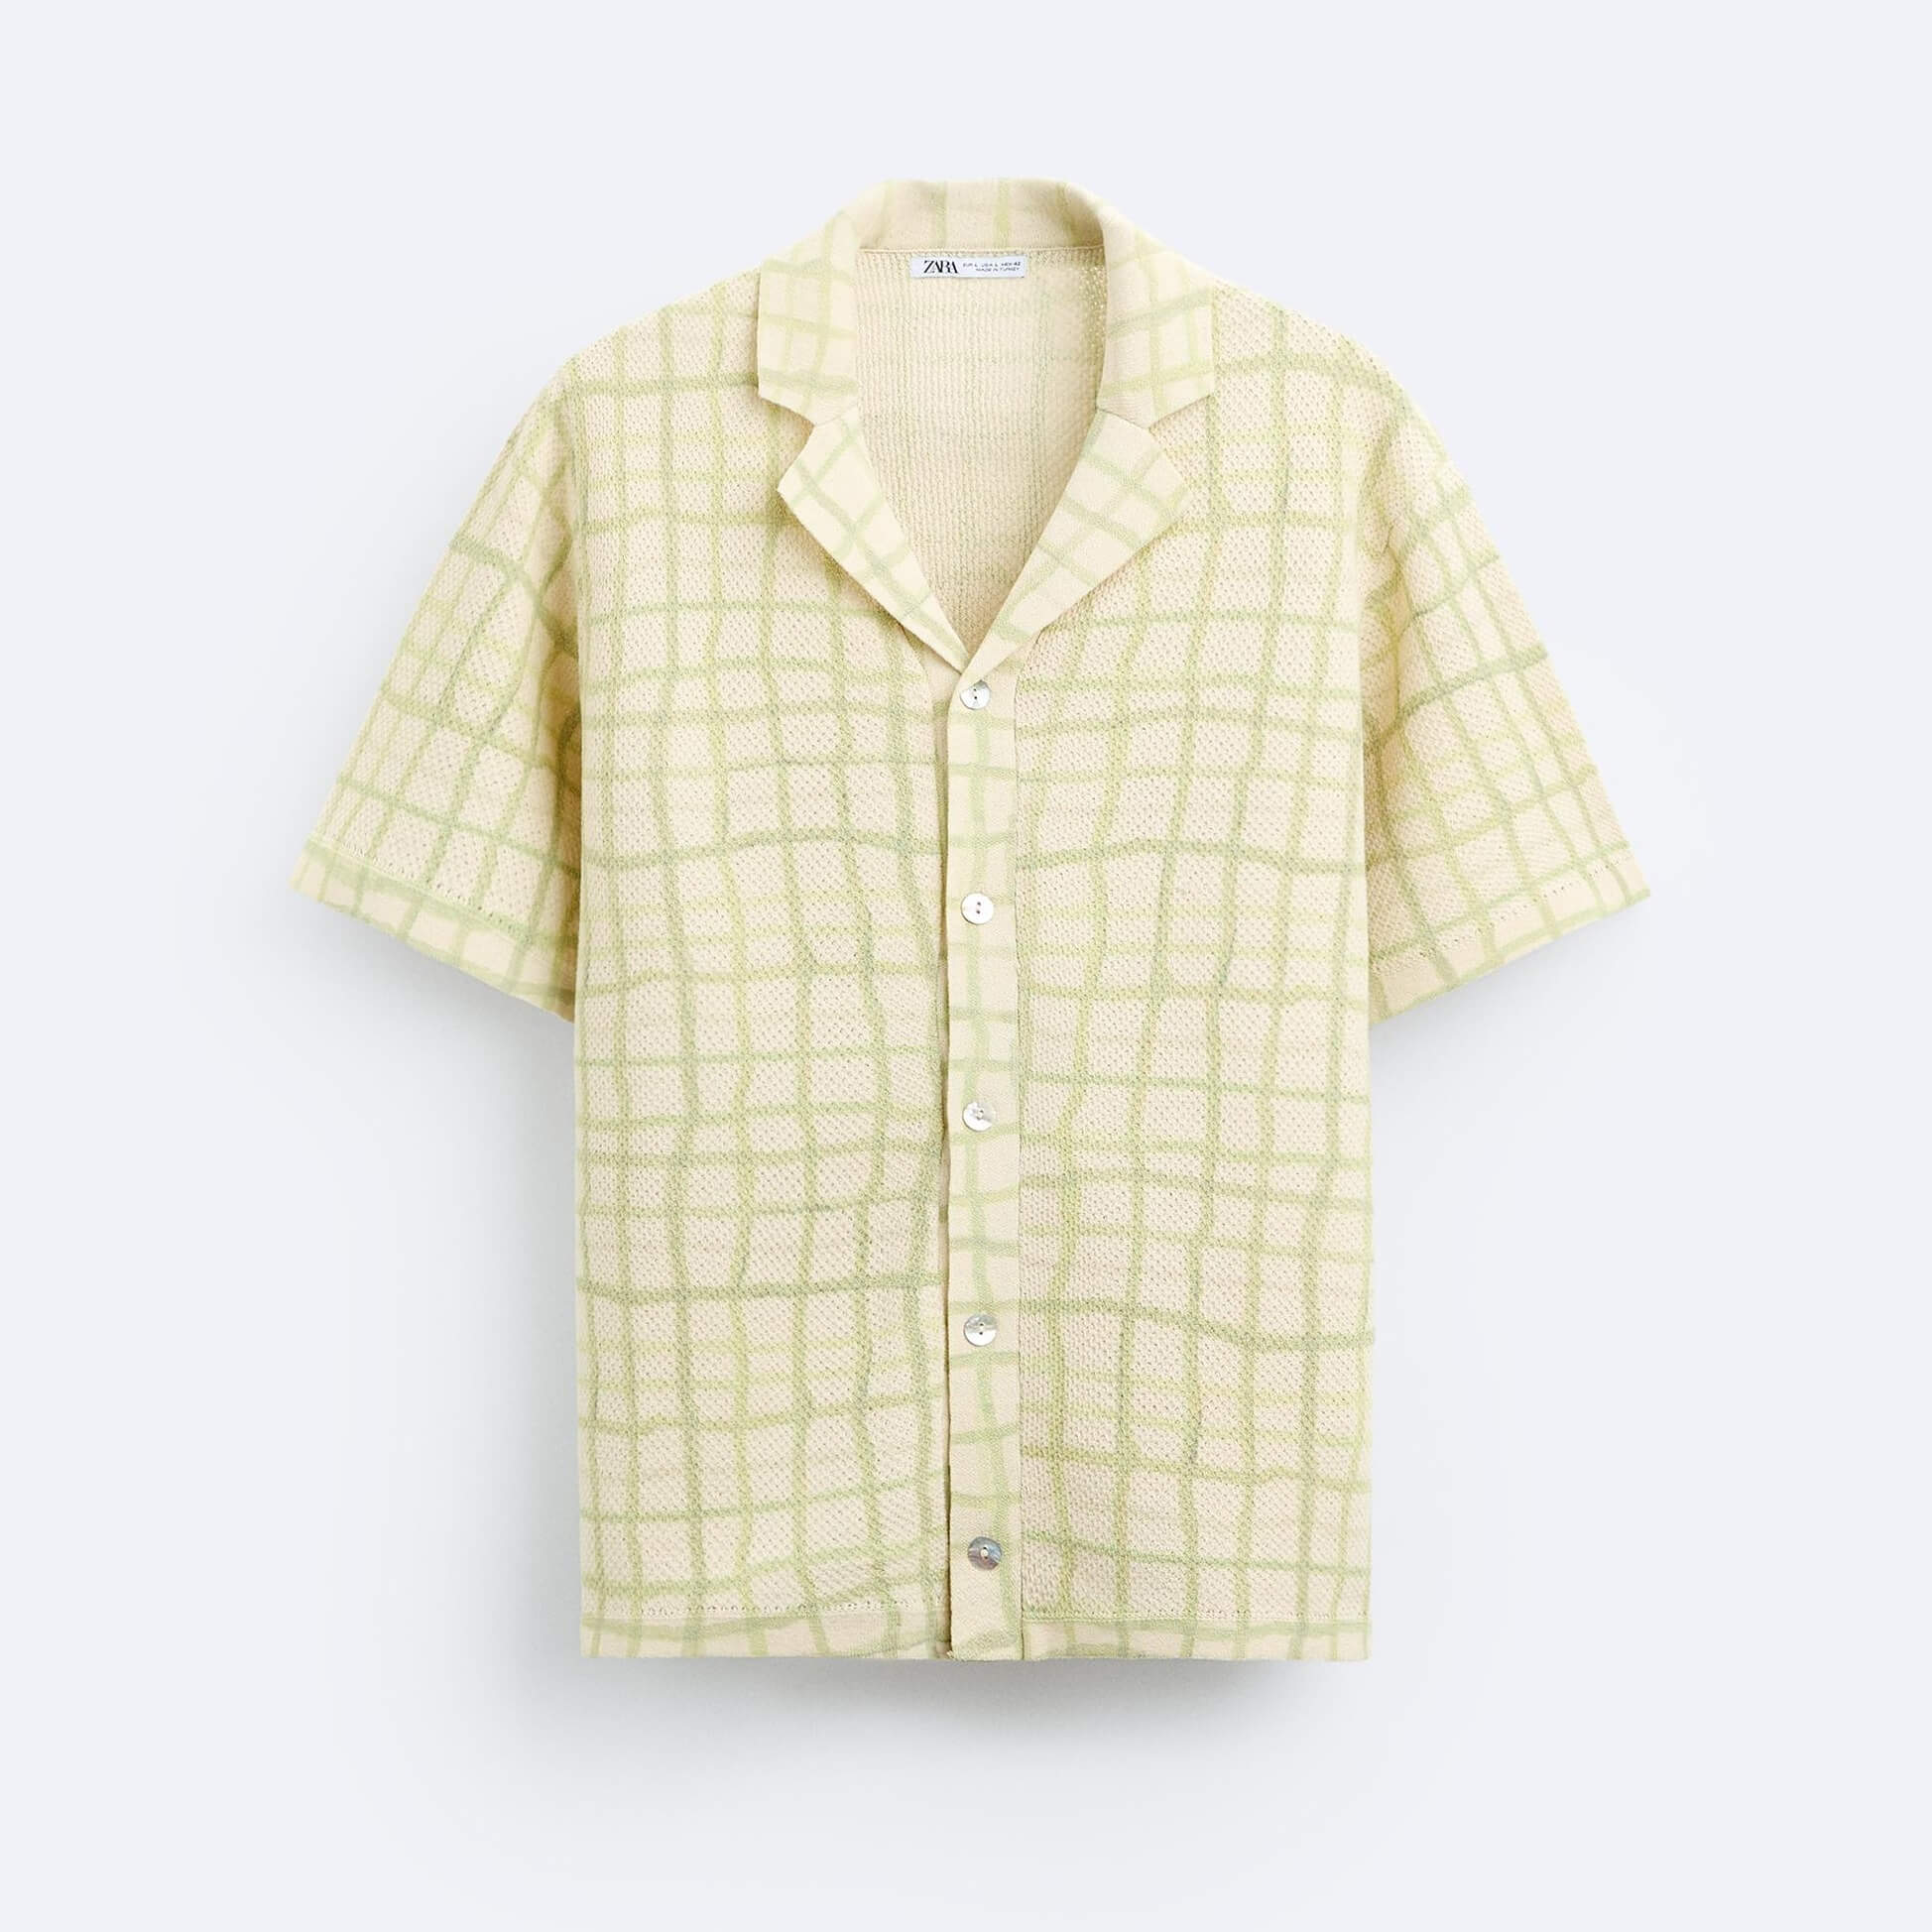 рубашка zara contrast jacquard зеленый кремовый Рубашка Zara Jacquard Knit, светло-зеленый